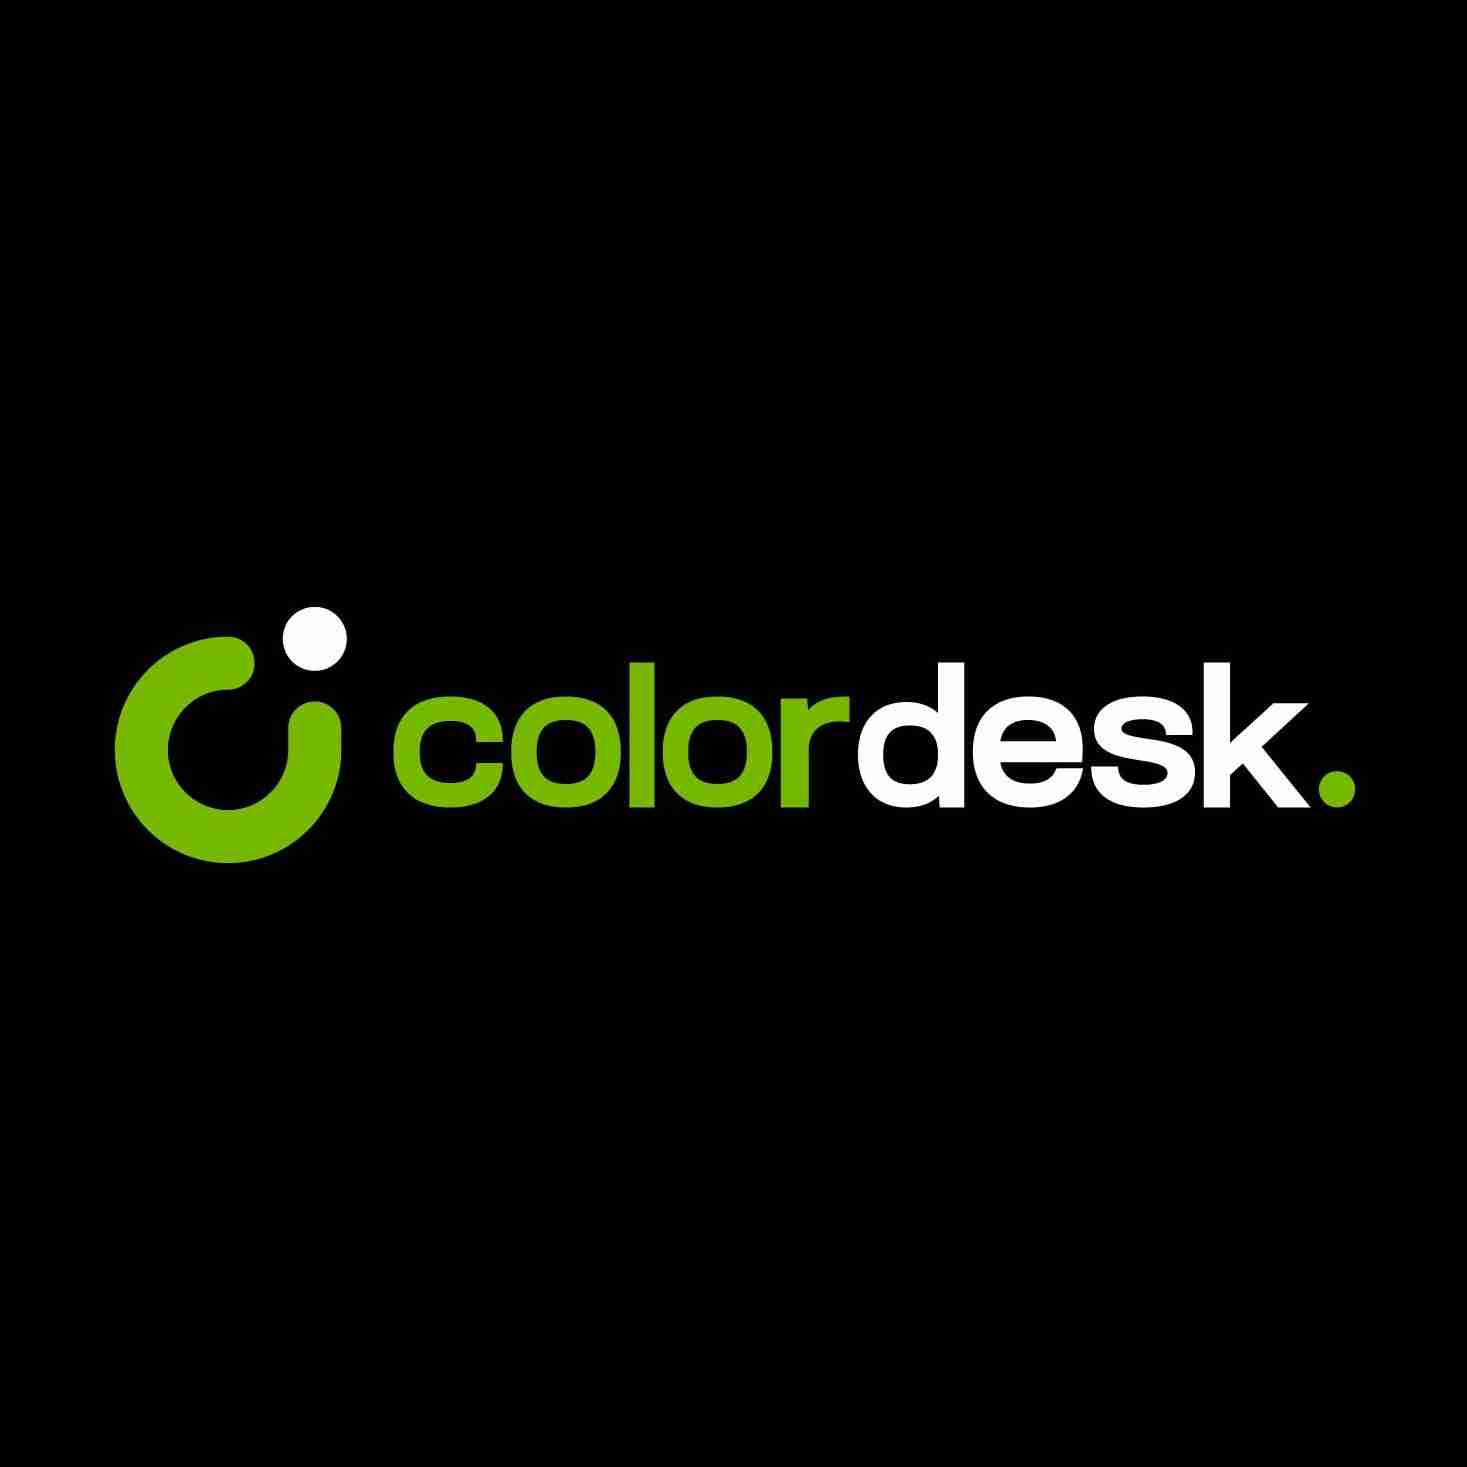 Color desk